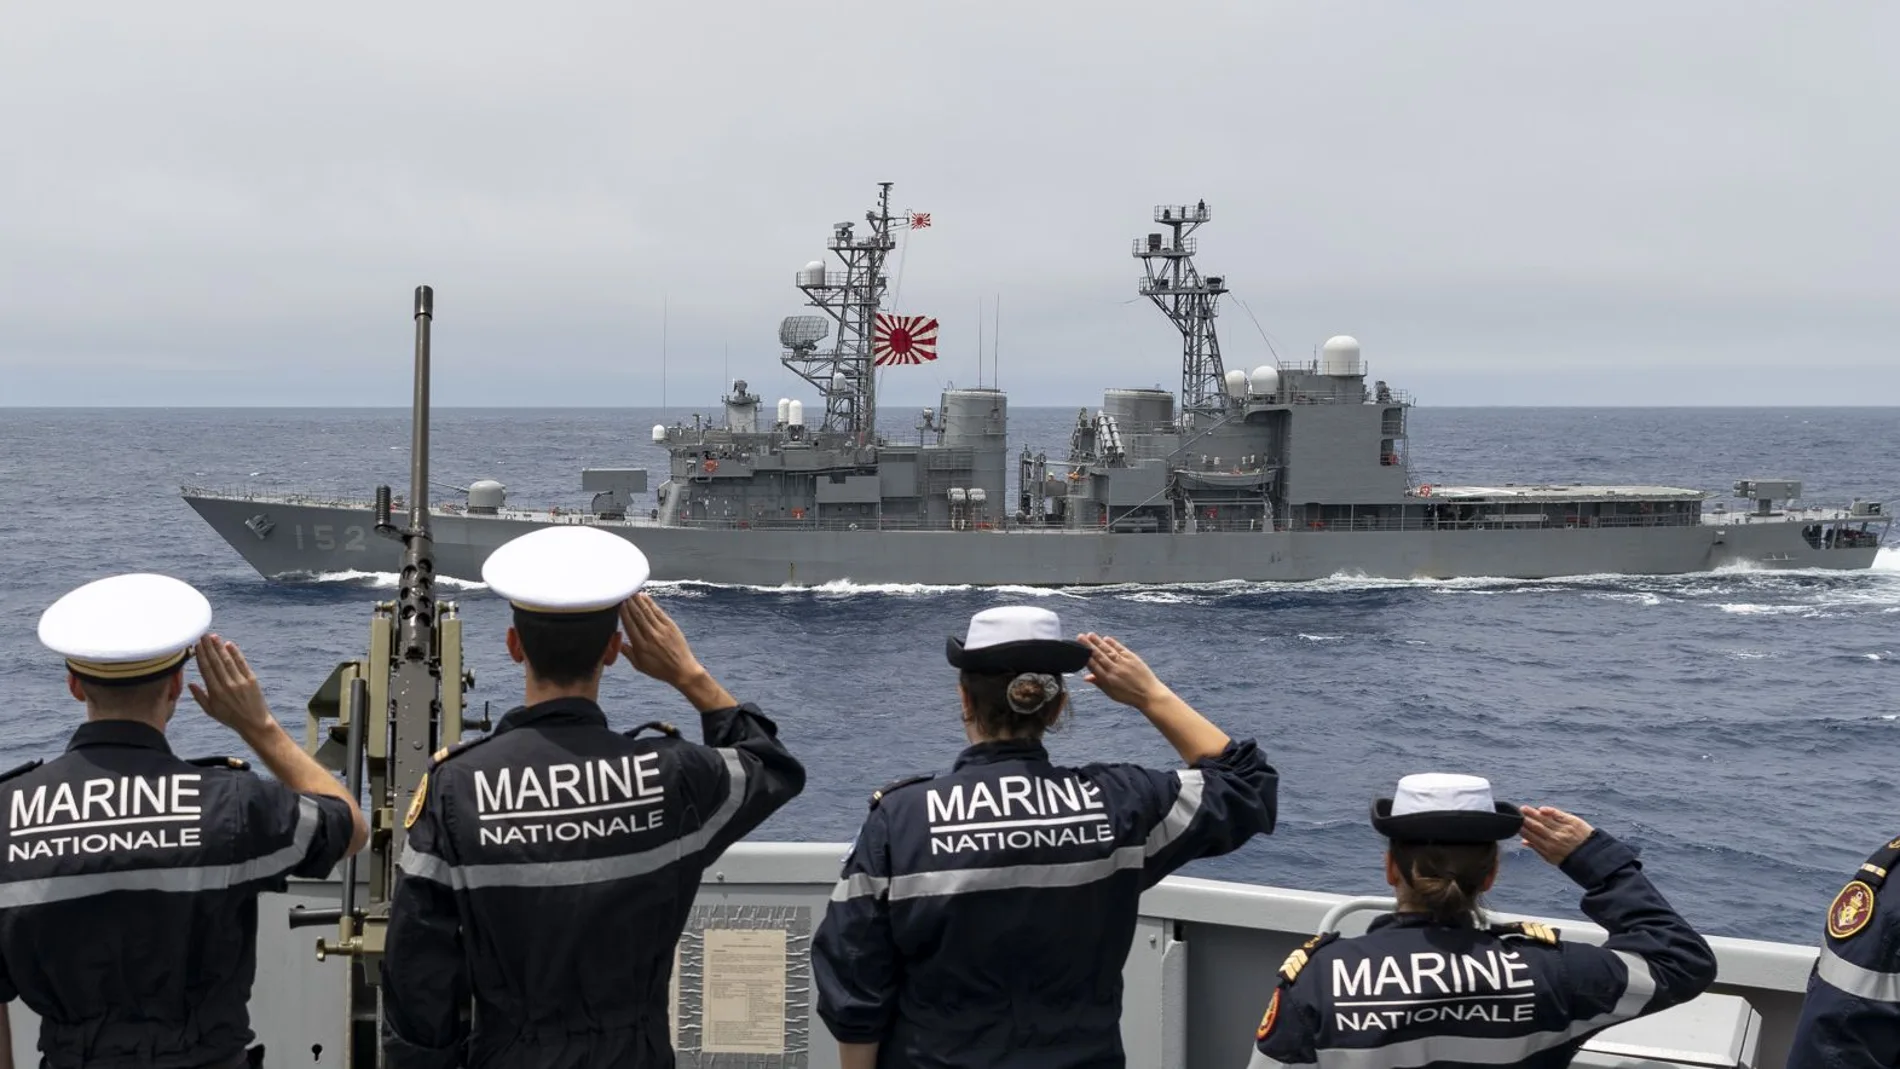 Marinos franceses del FS Lorraine saludan al paso del JS Yamagiri, buque de guerra japonés con la bandera del sol naciente